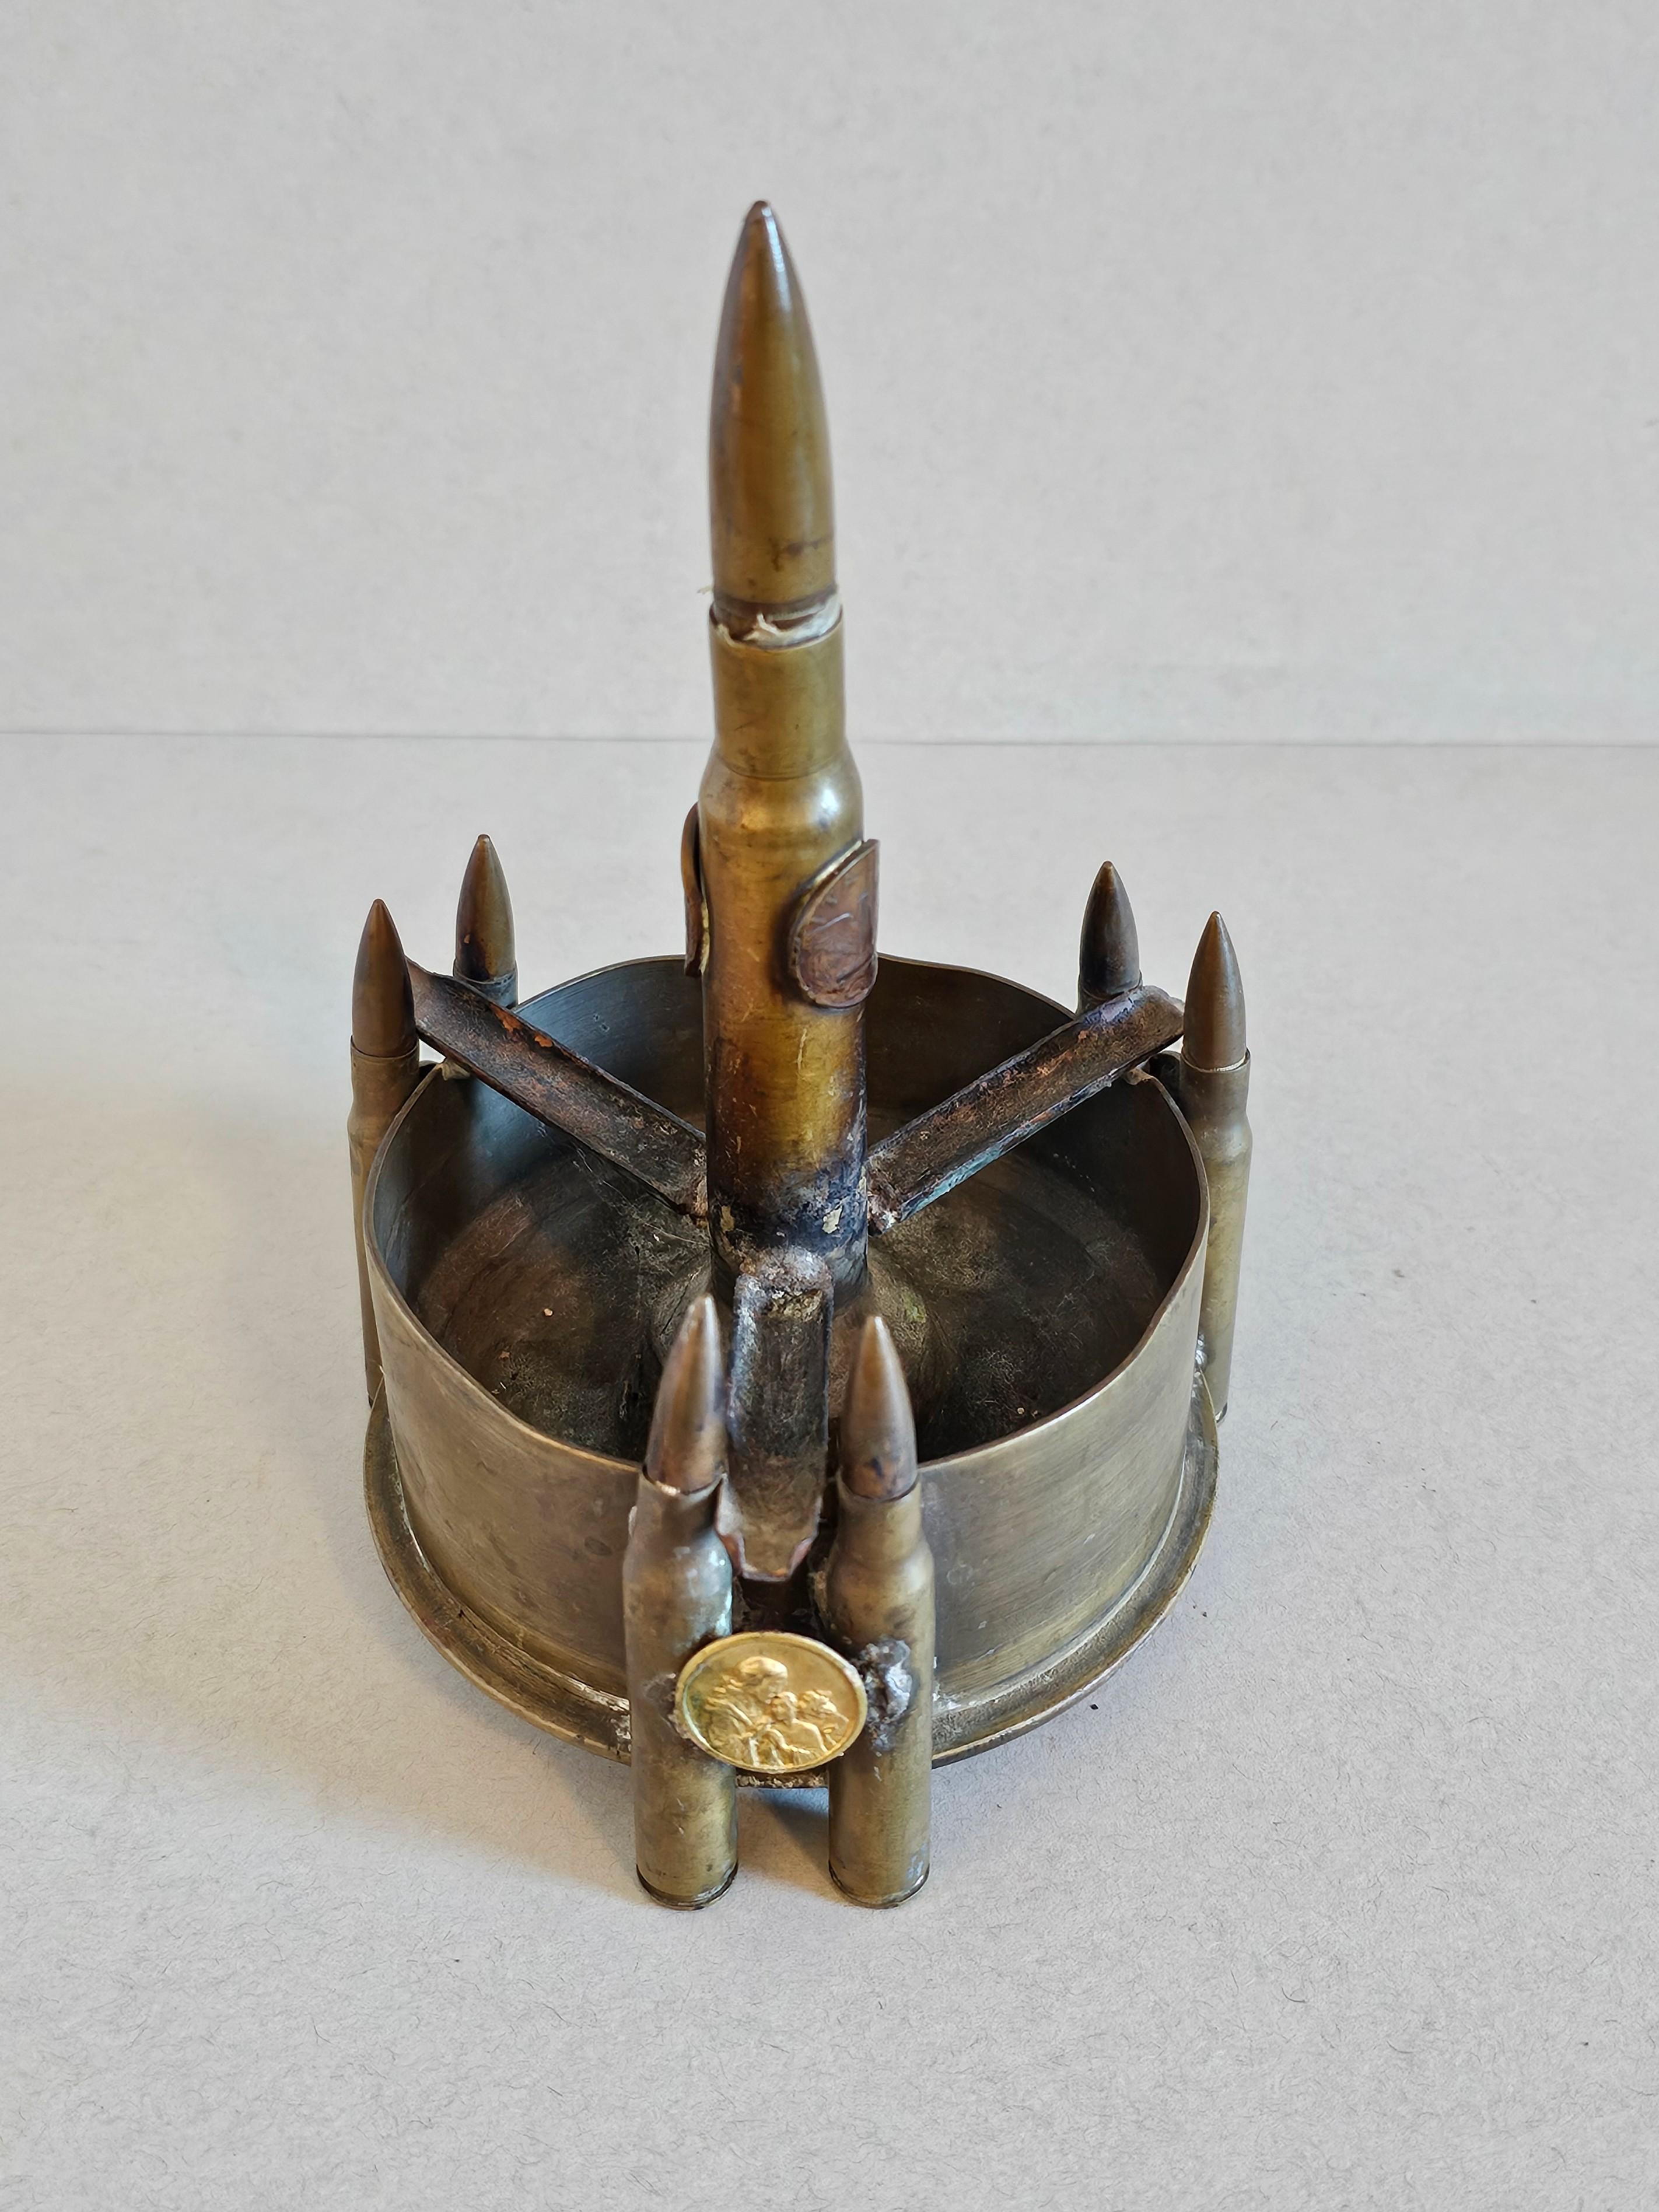 Un fascinant cendrier à munitions sculptural de l'art des tranchées de la Seconde Guerre mondiale.

Généralement fabriquée à la main par un soldat à partir d'objets trouvés pendant son temps de repos à la guerre, en particulier dans les tranchées de